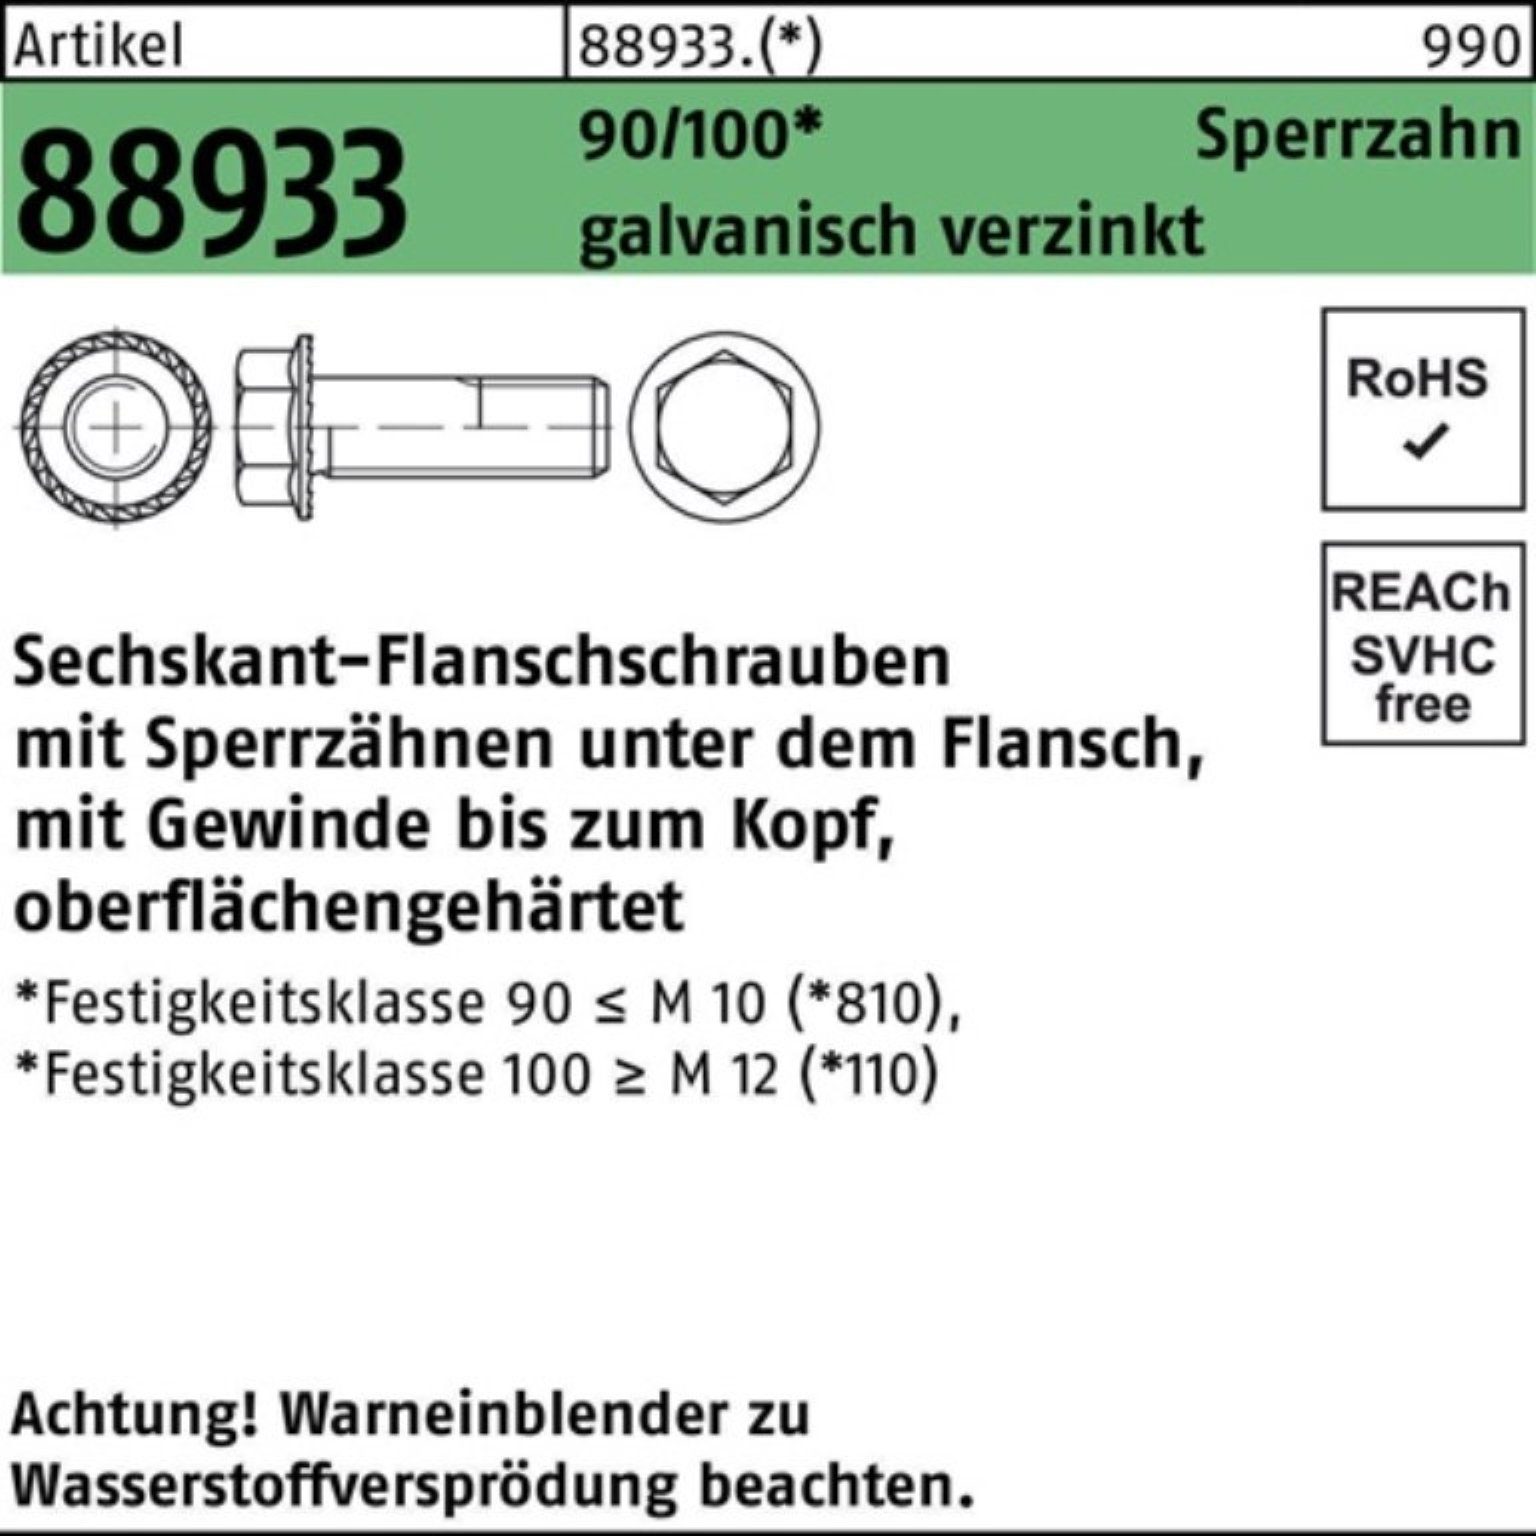 90/100 R Reyher VG ga Pack Schraube 88933 500er Sechskantflanschschraube Sperrz. M6x10